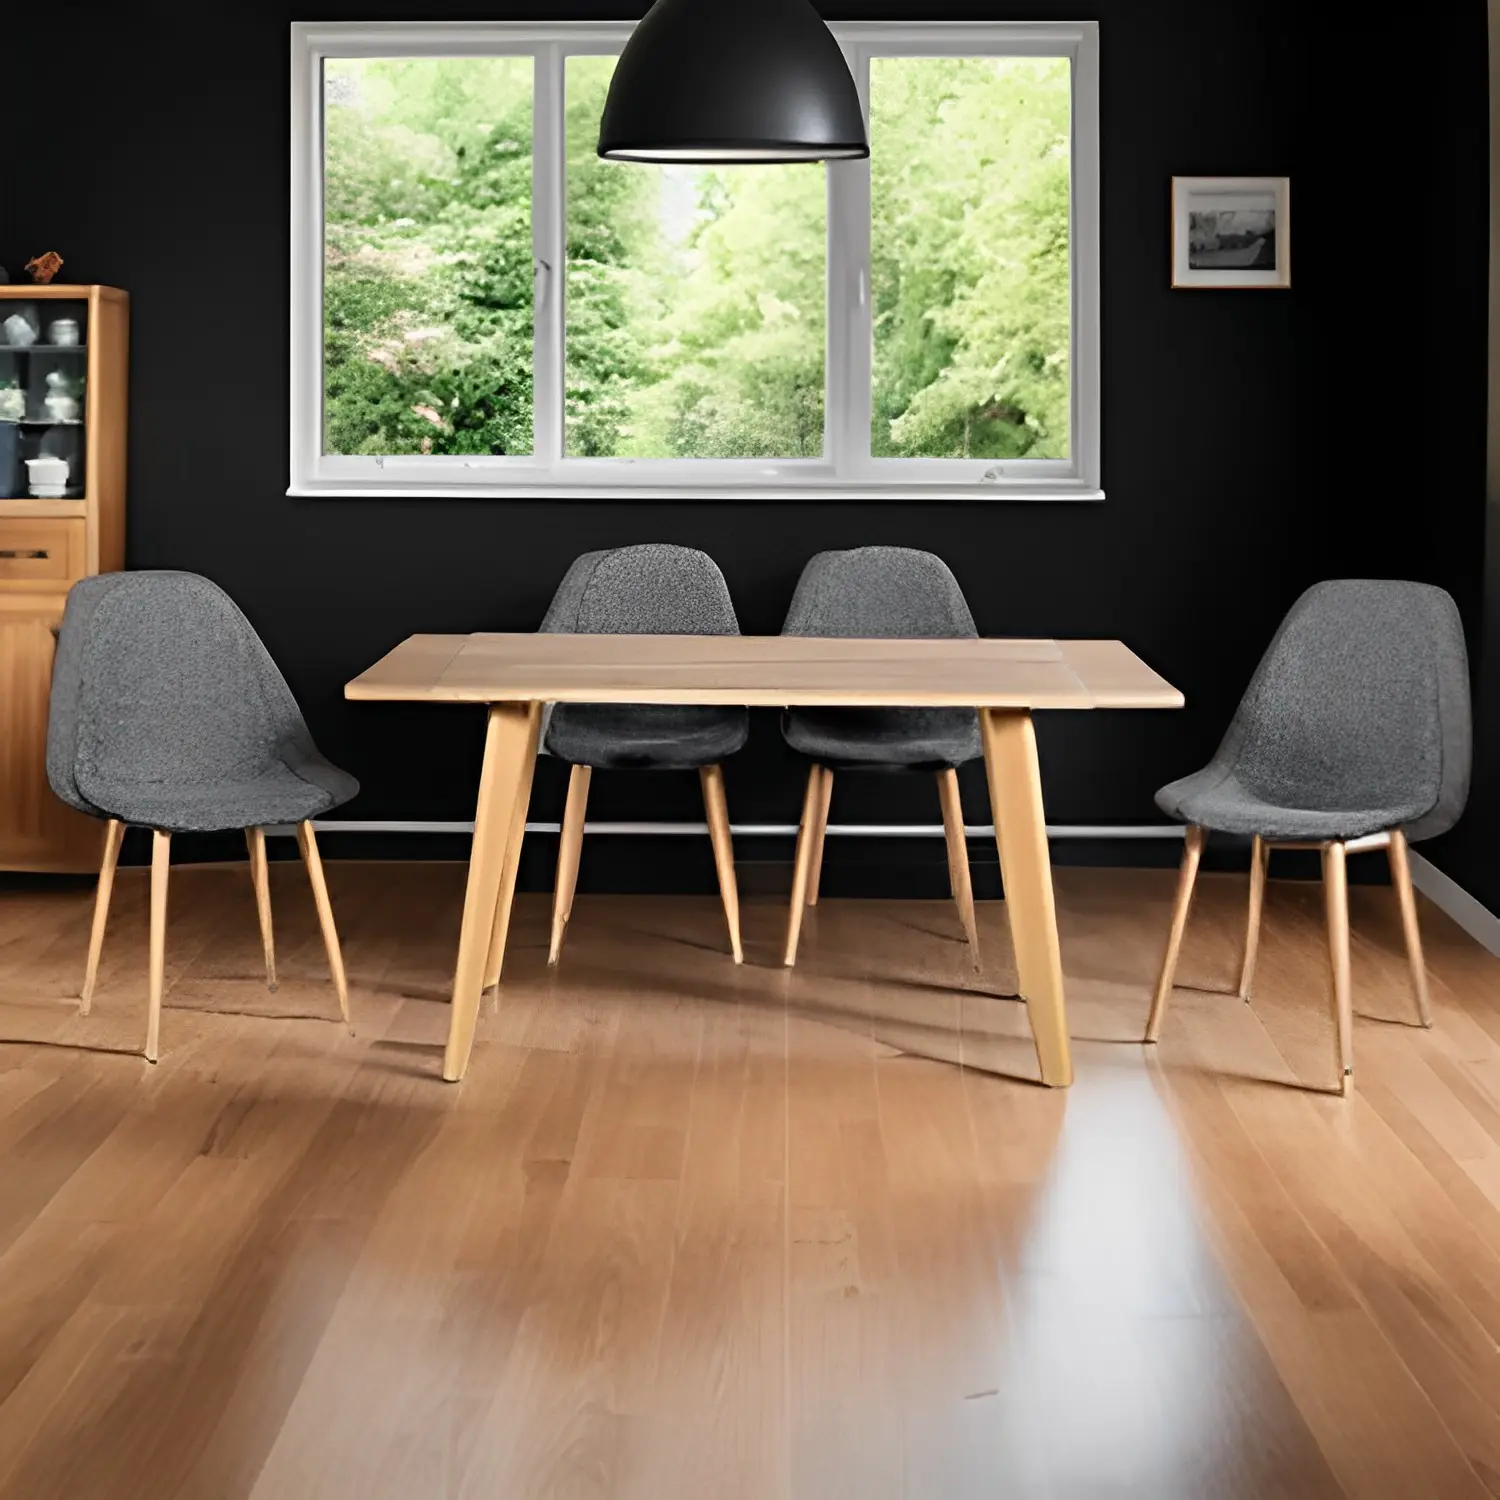 식탁과 의자 세트 럭셔리 현대 레스토랑 홈 다이닝 룸 식탁 MDF 나무 탑 식탁 세트